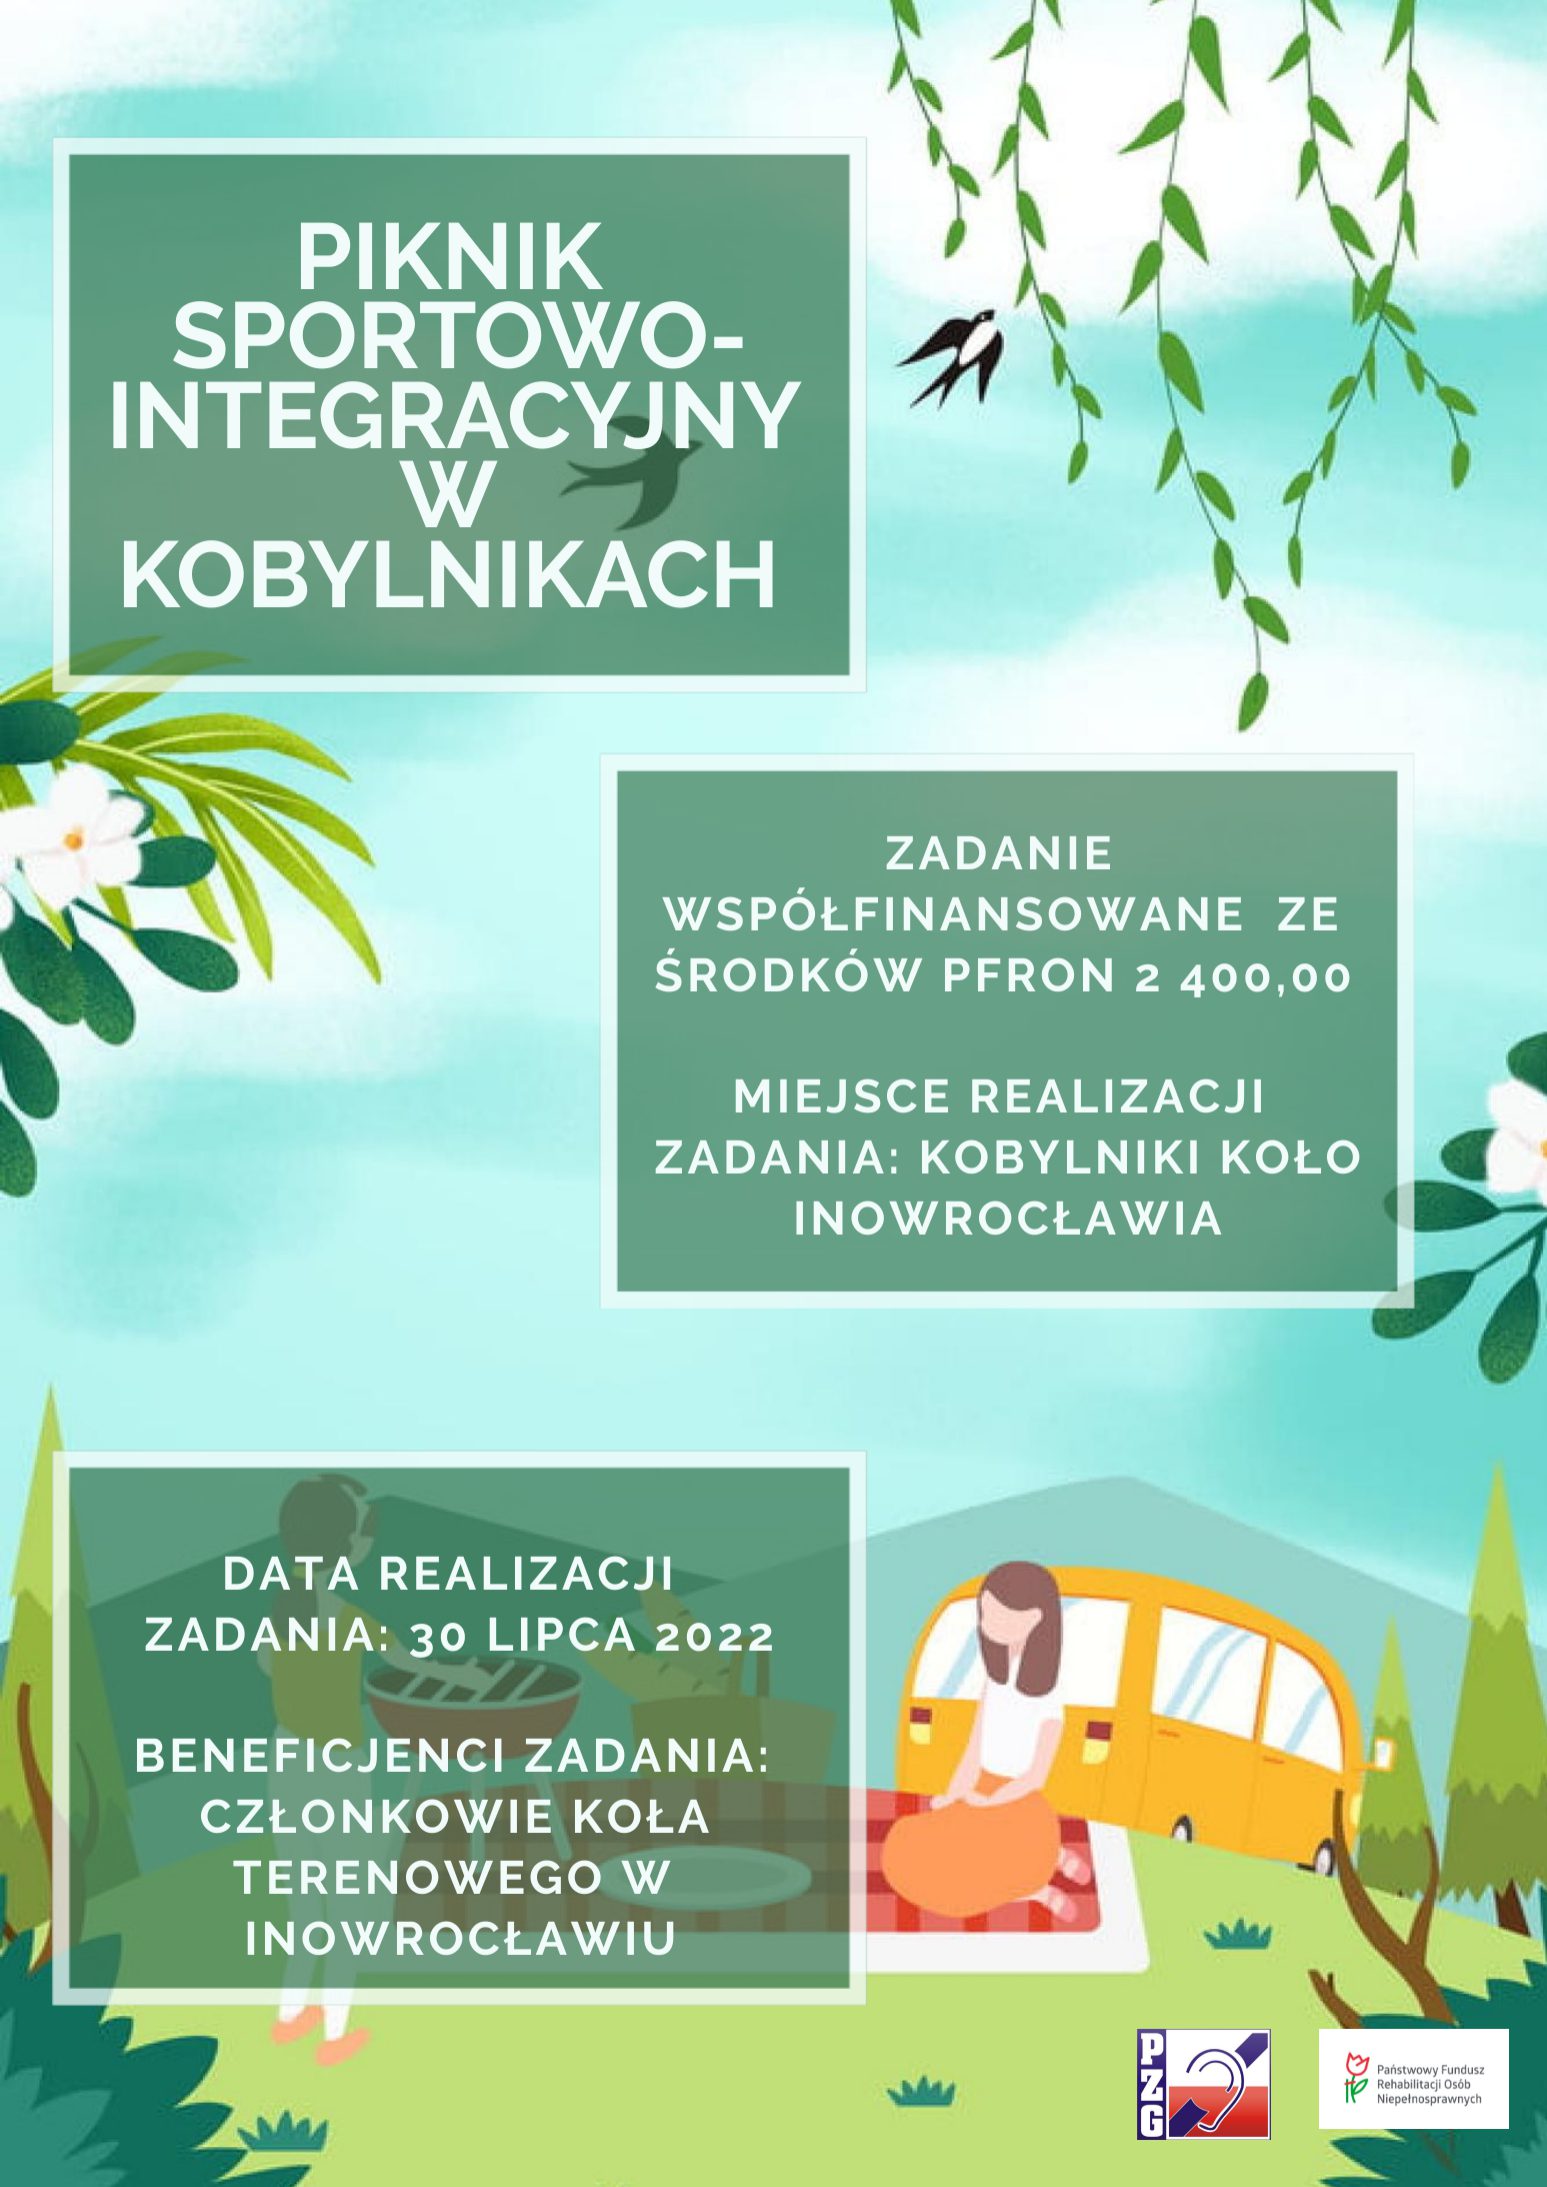 Piknik sportowo-integracyjny w Kobylnikach